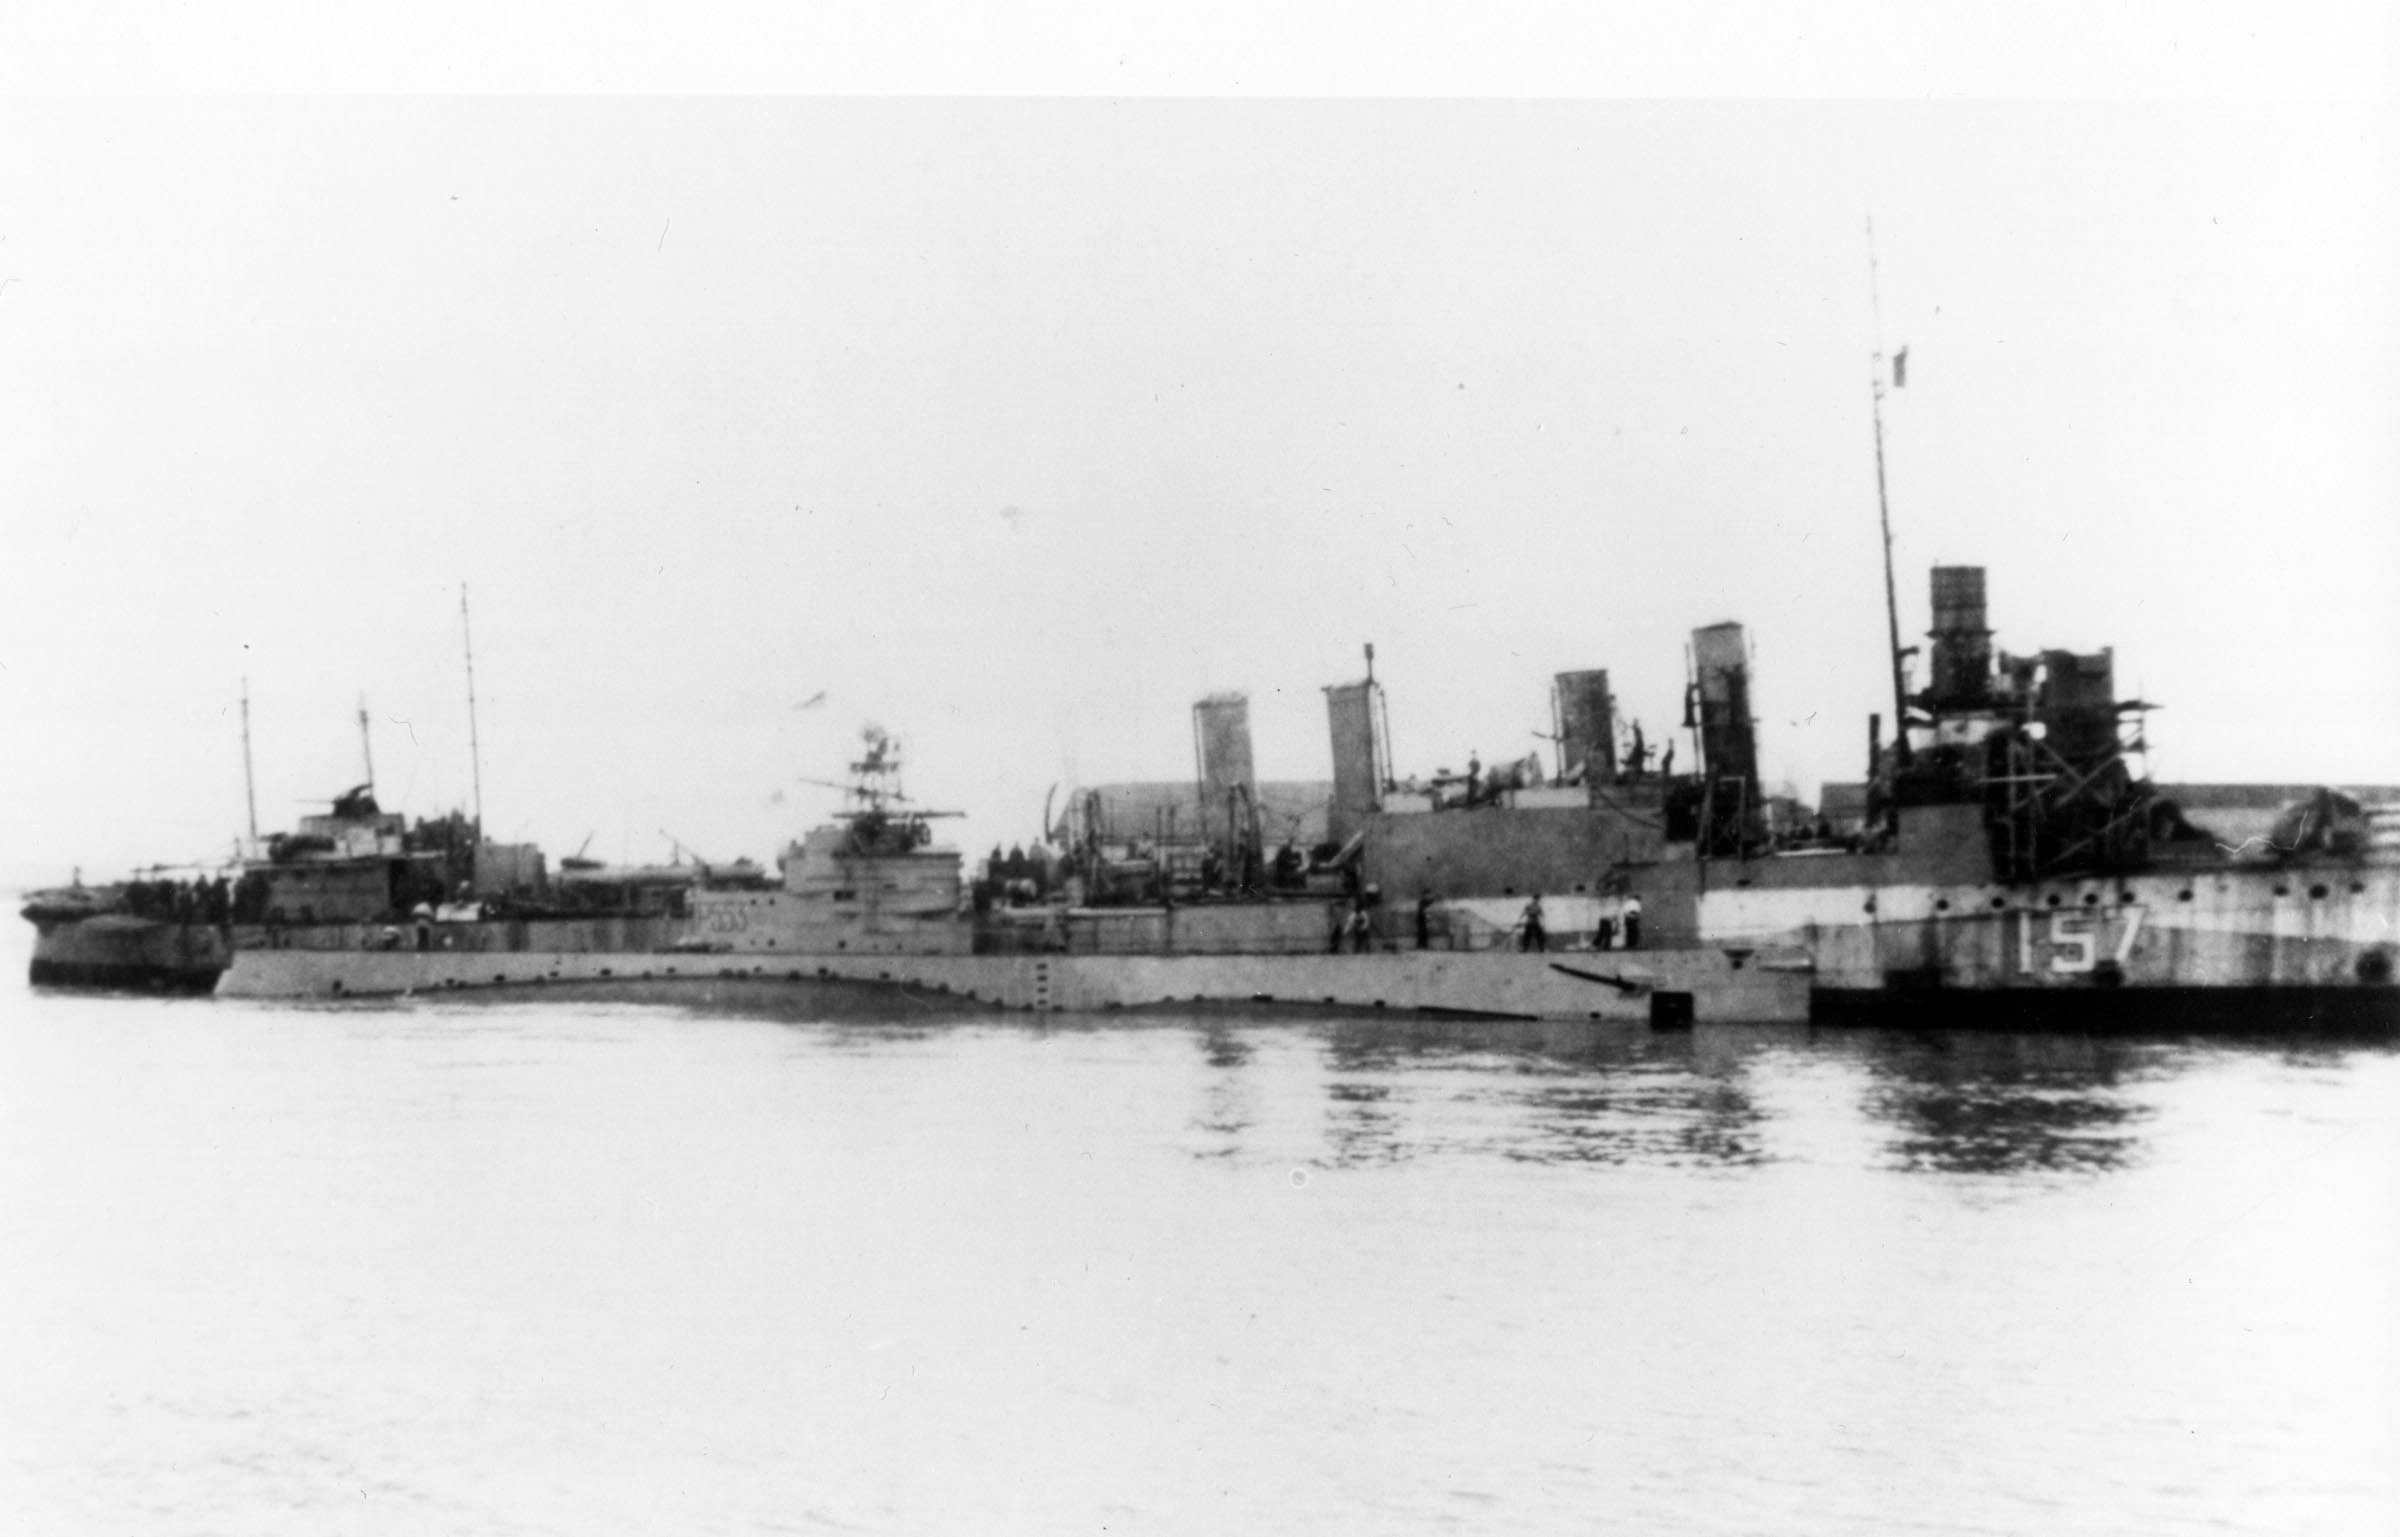 HMCS NIAGARA